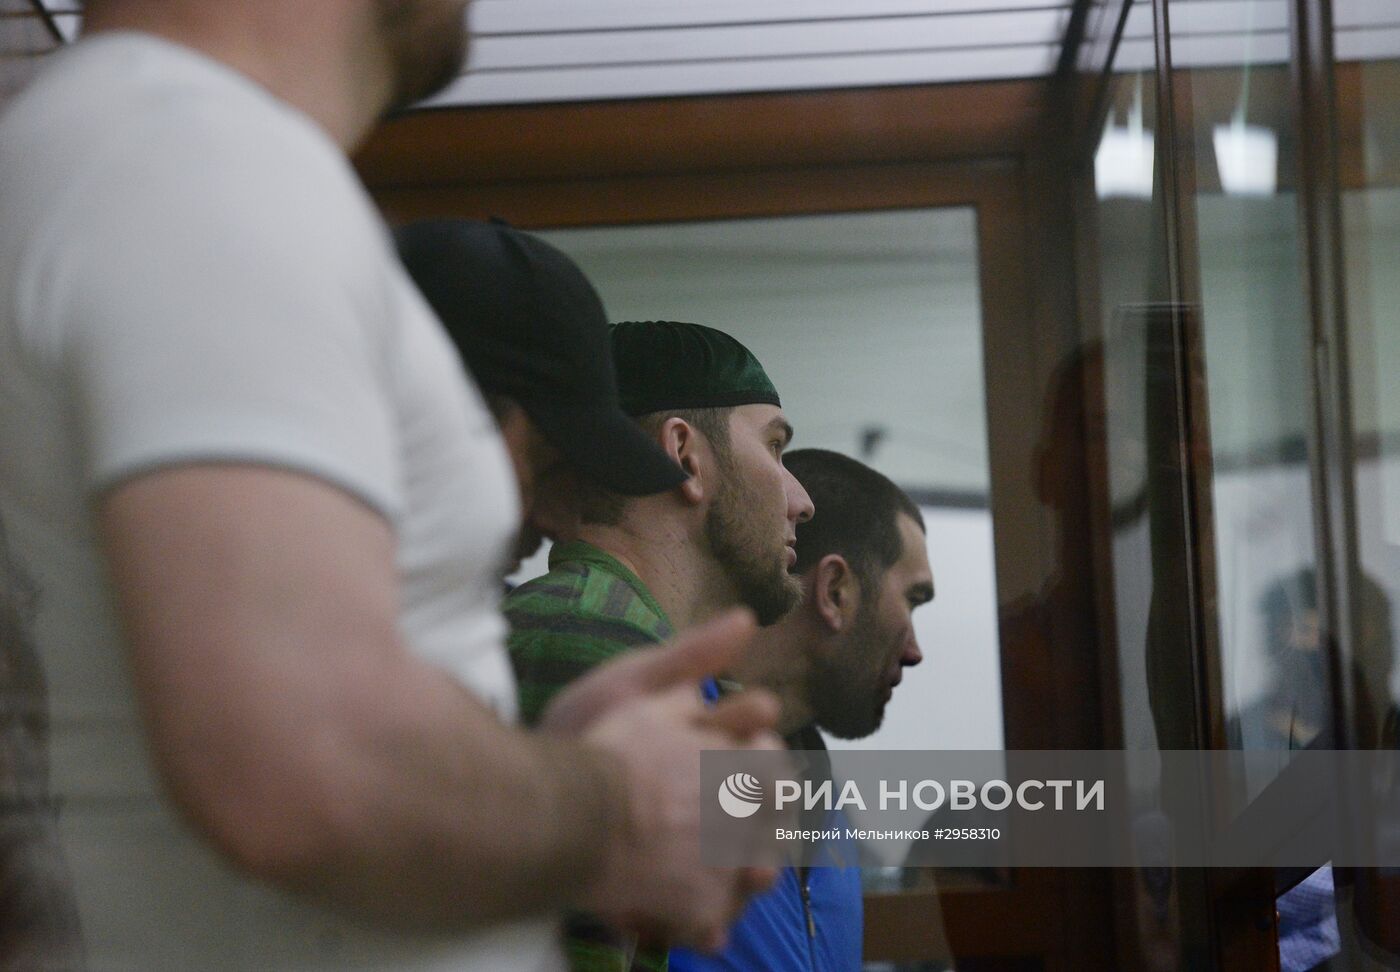 Рассмотрение уголовного дела об убийстве политика Б. Немцова